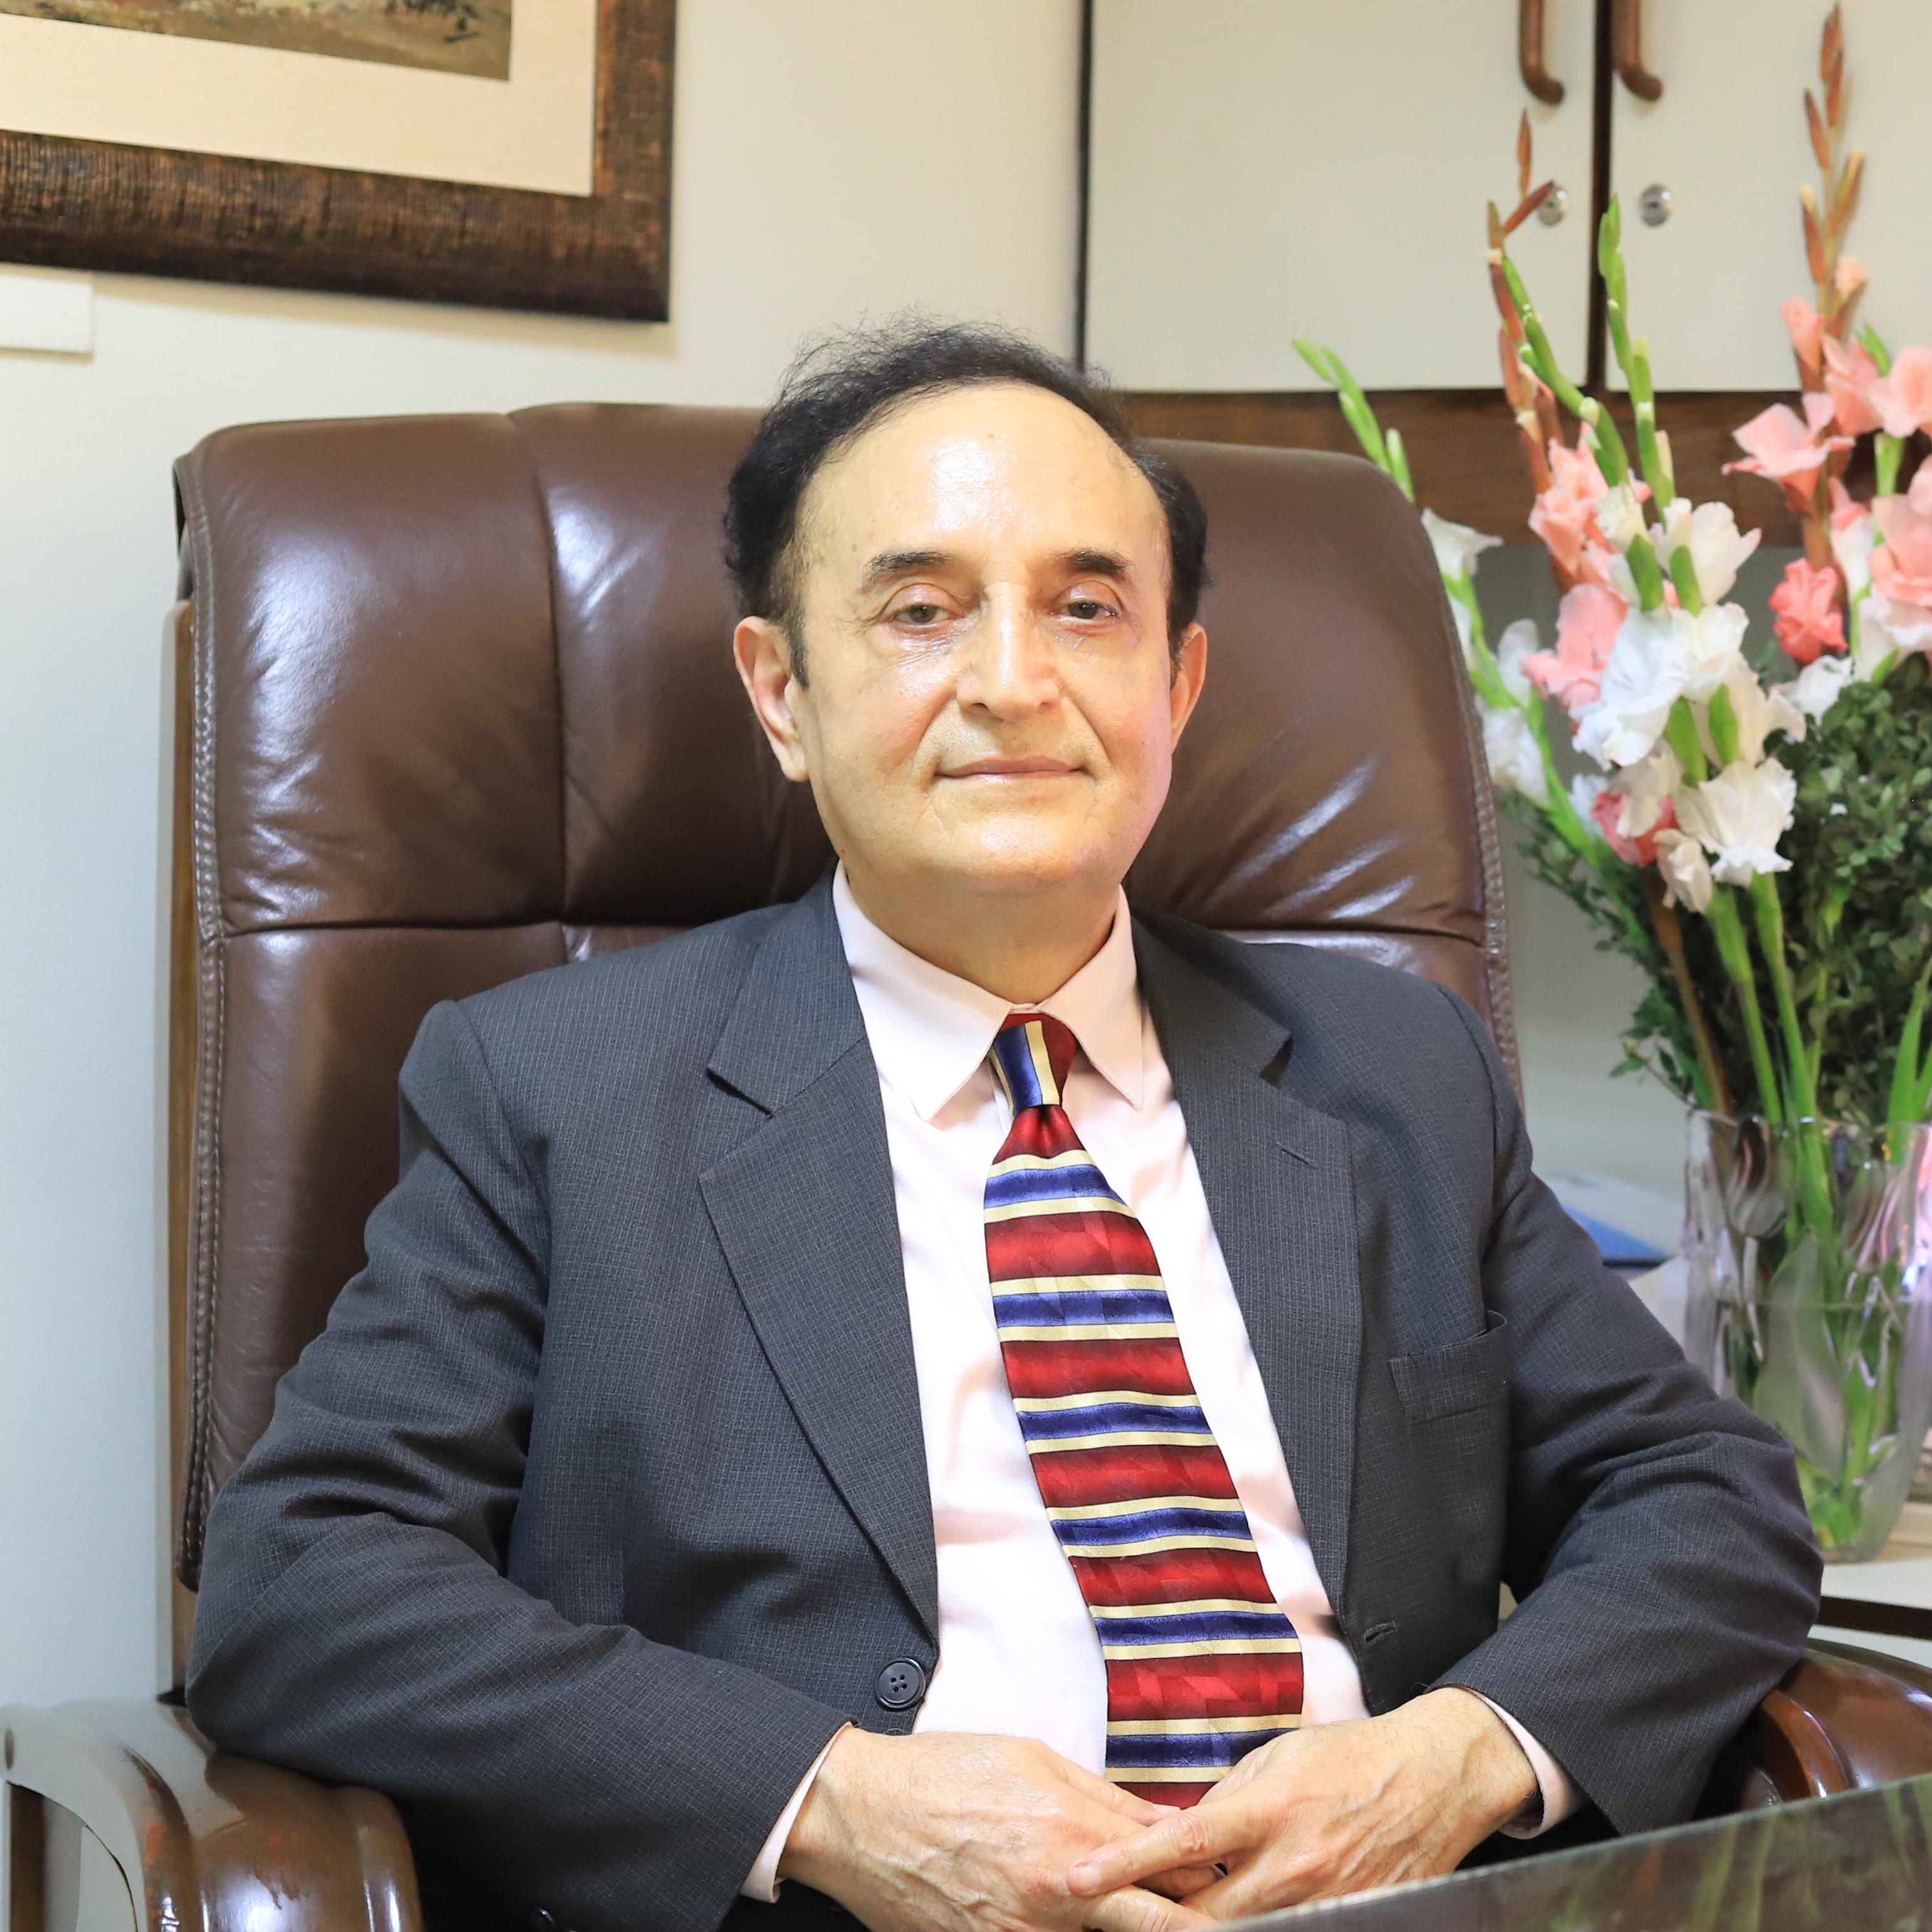 Dr. Miqdad Ali Khan